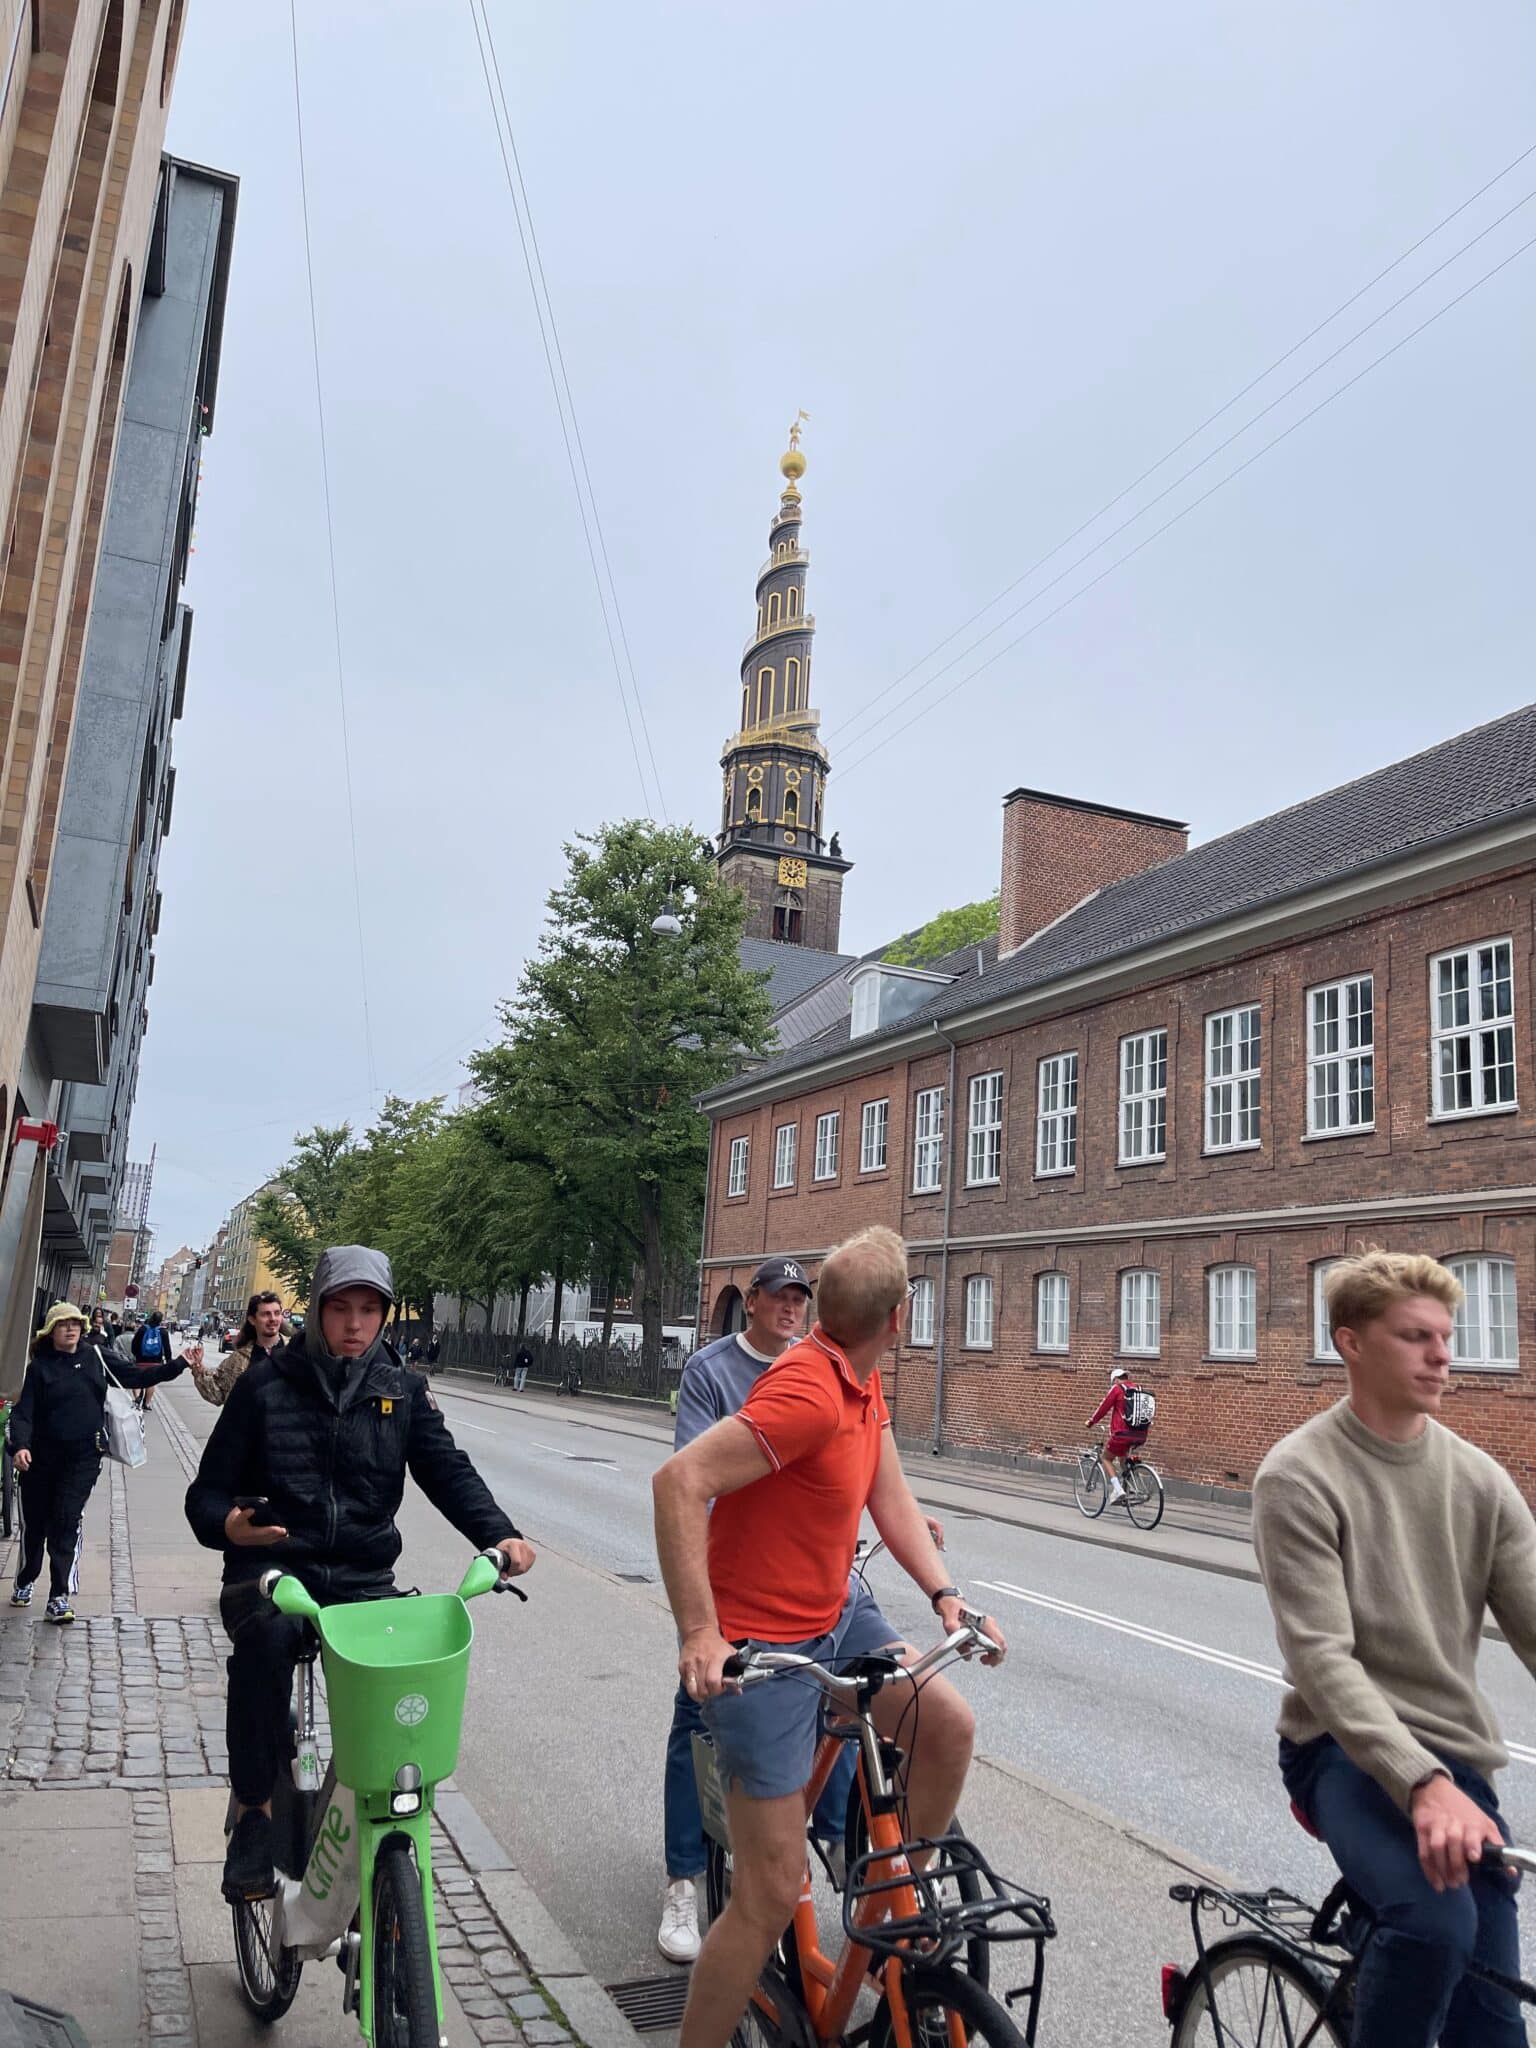 Our Savior Church tower in Copenhagen